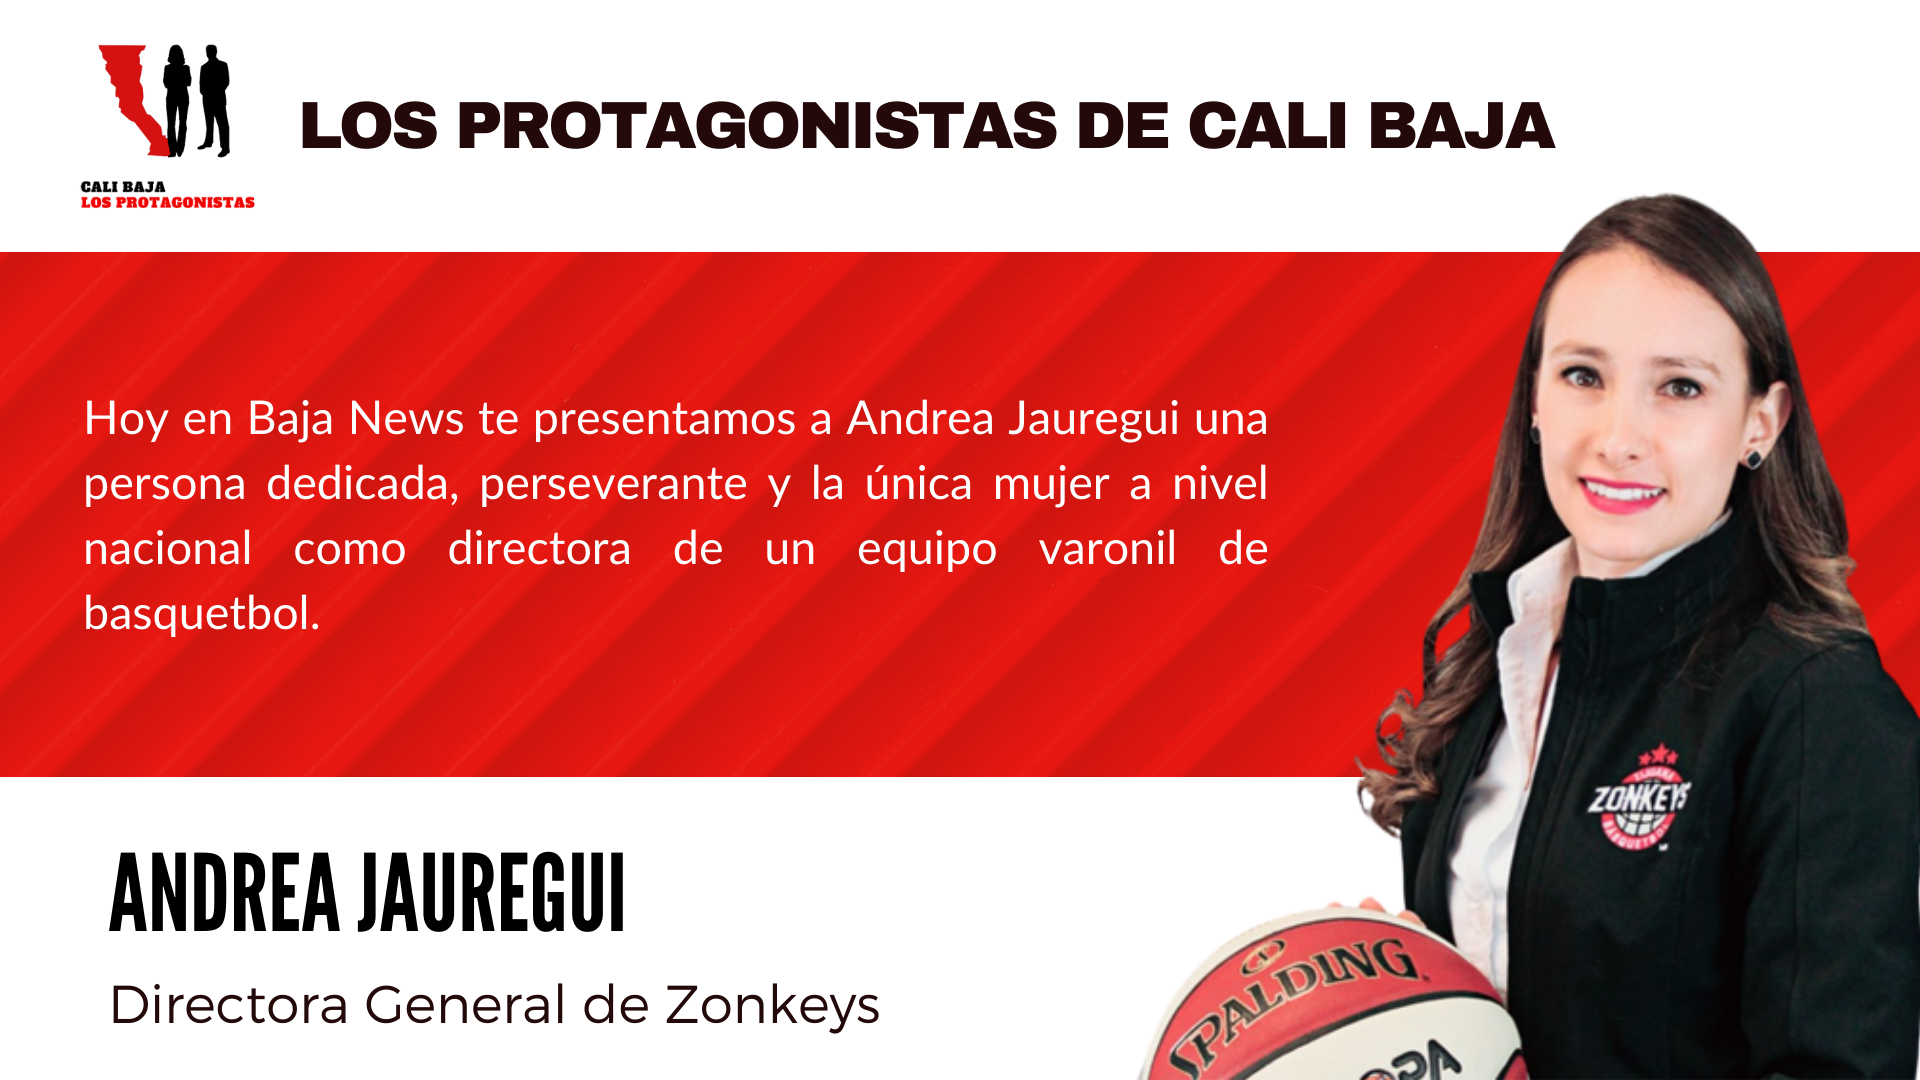 Andrea Jauregui, Directora General de Zonkeys en Los Protagonistas